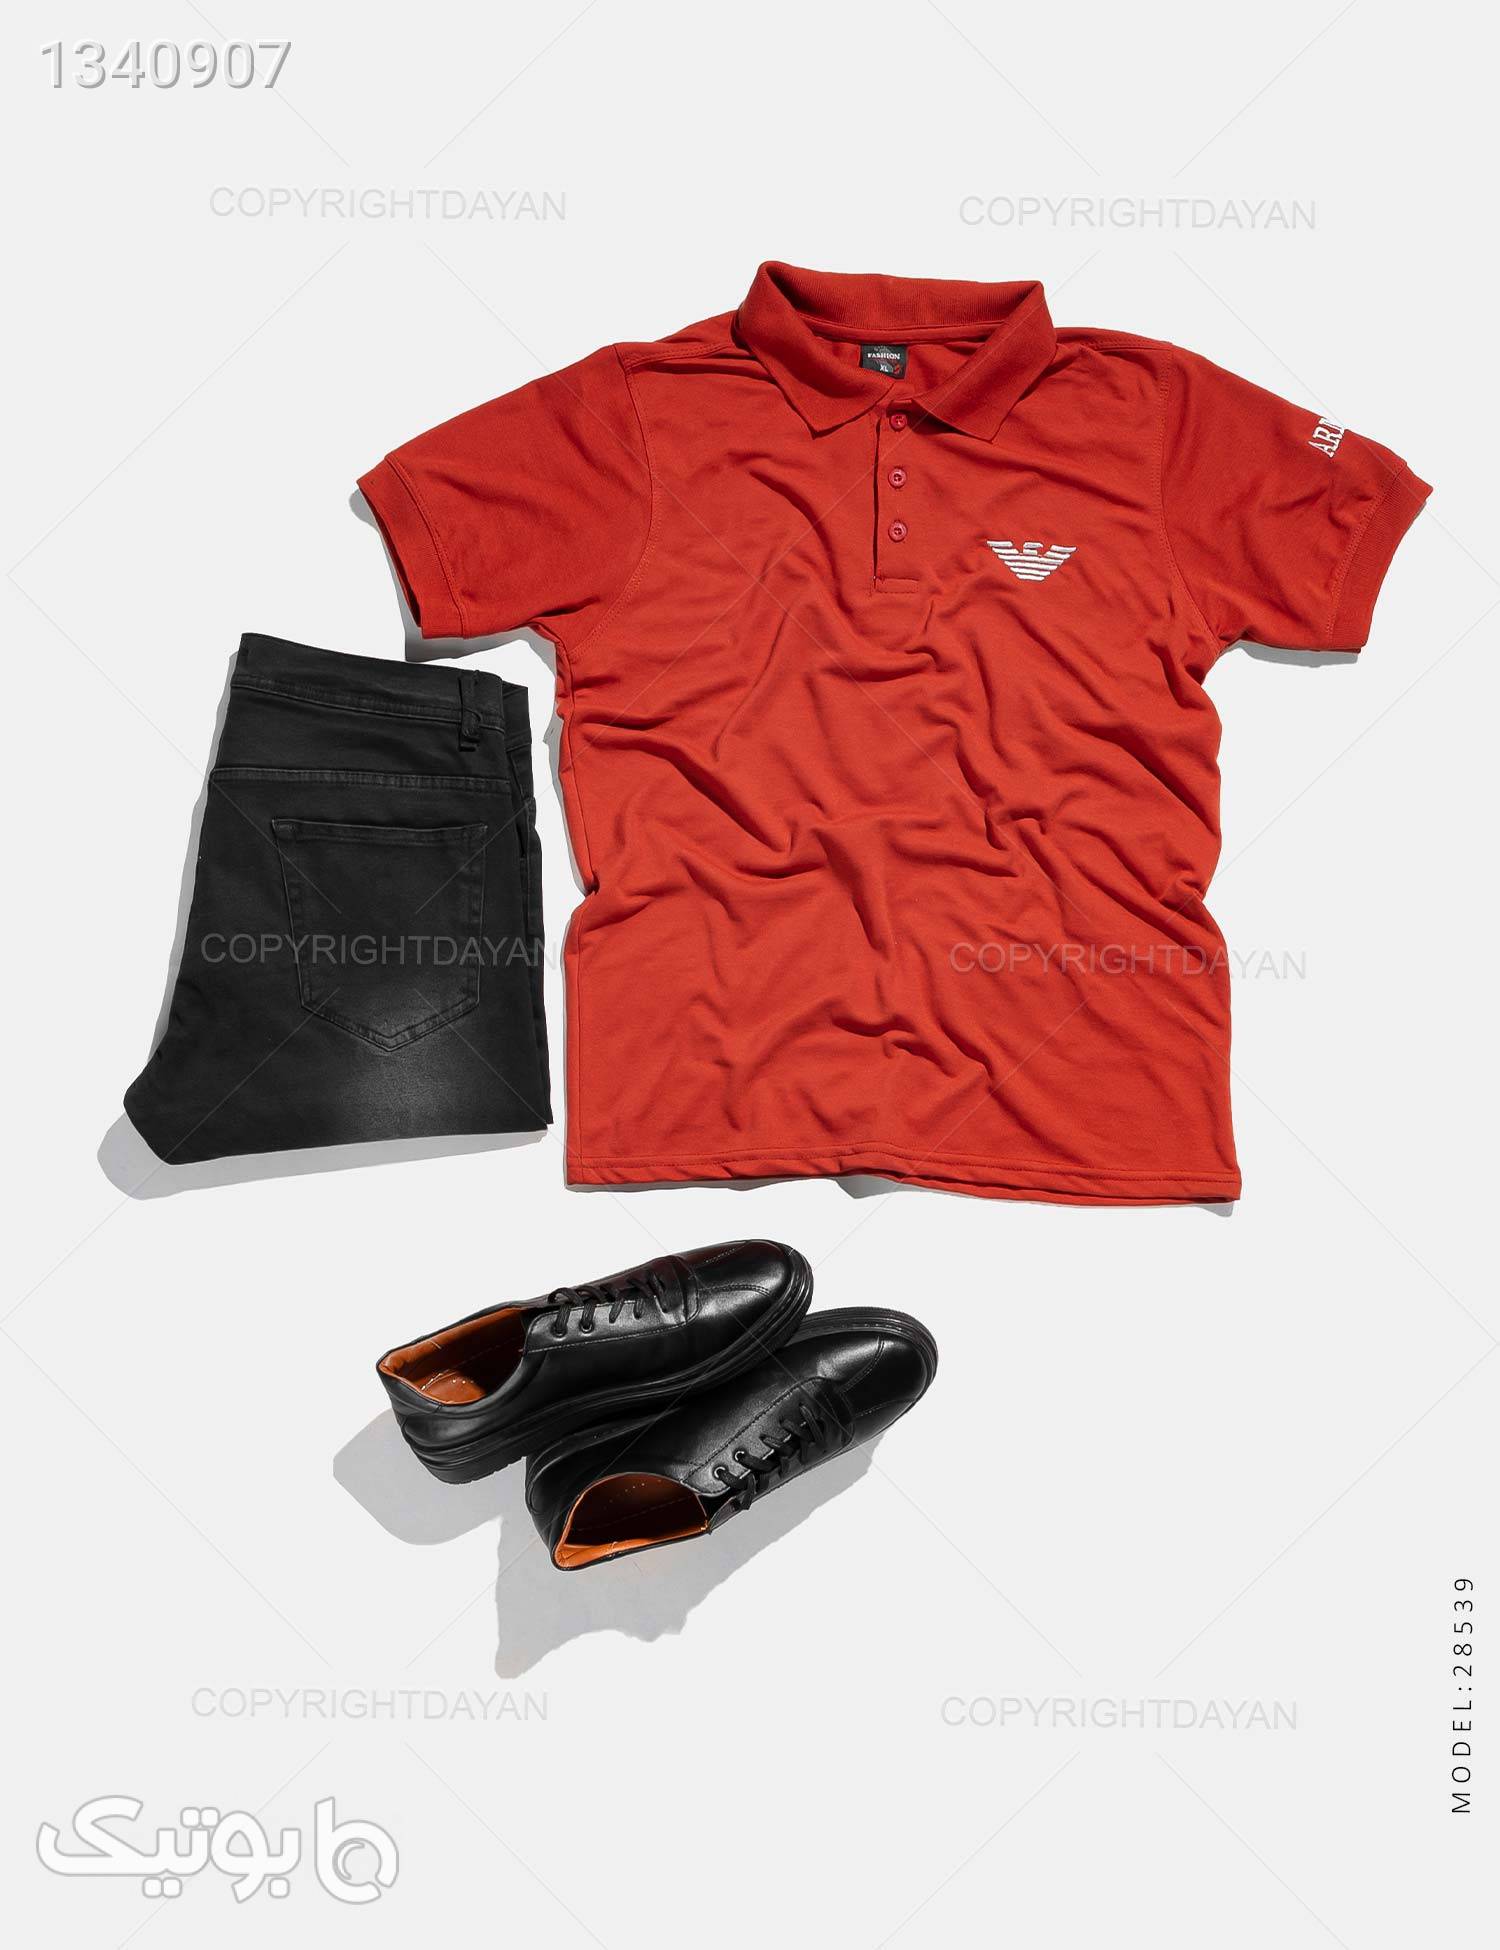 پولوشرت مردانه Emporio Armani مدل 28539 قرمز تی شرت و پولو شرت مردانه